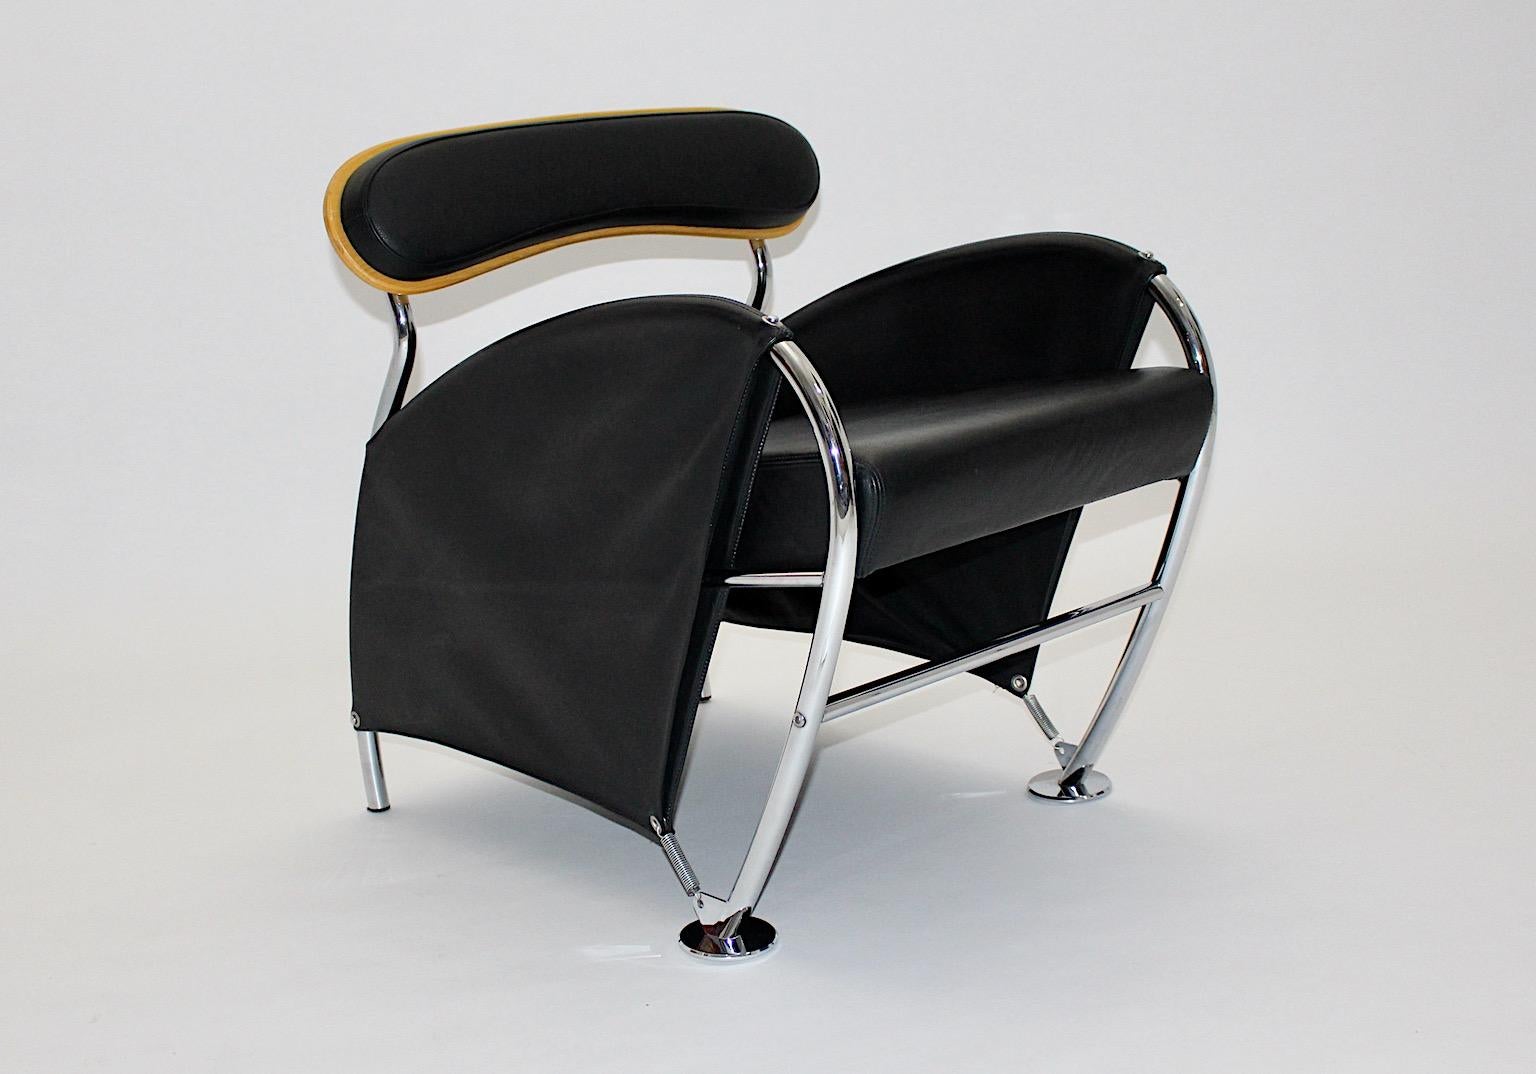 Chaise longue ou fauteuil vintage de style moderne italien, modèle Numero Uno, en cuir et chrome par Massimo Iosa Ghini pour Moroso 1986, Italie.
Chaise de salon ergonomique autoportante ou fauteuil ou chaise longue en cuir noir avec détails